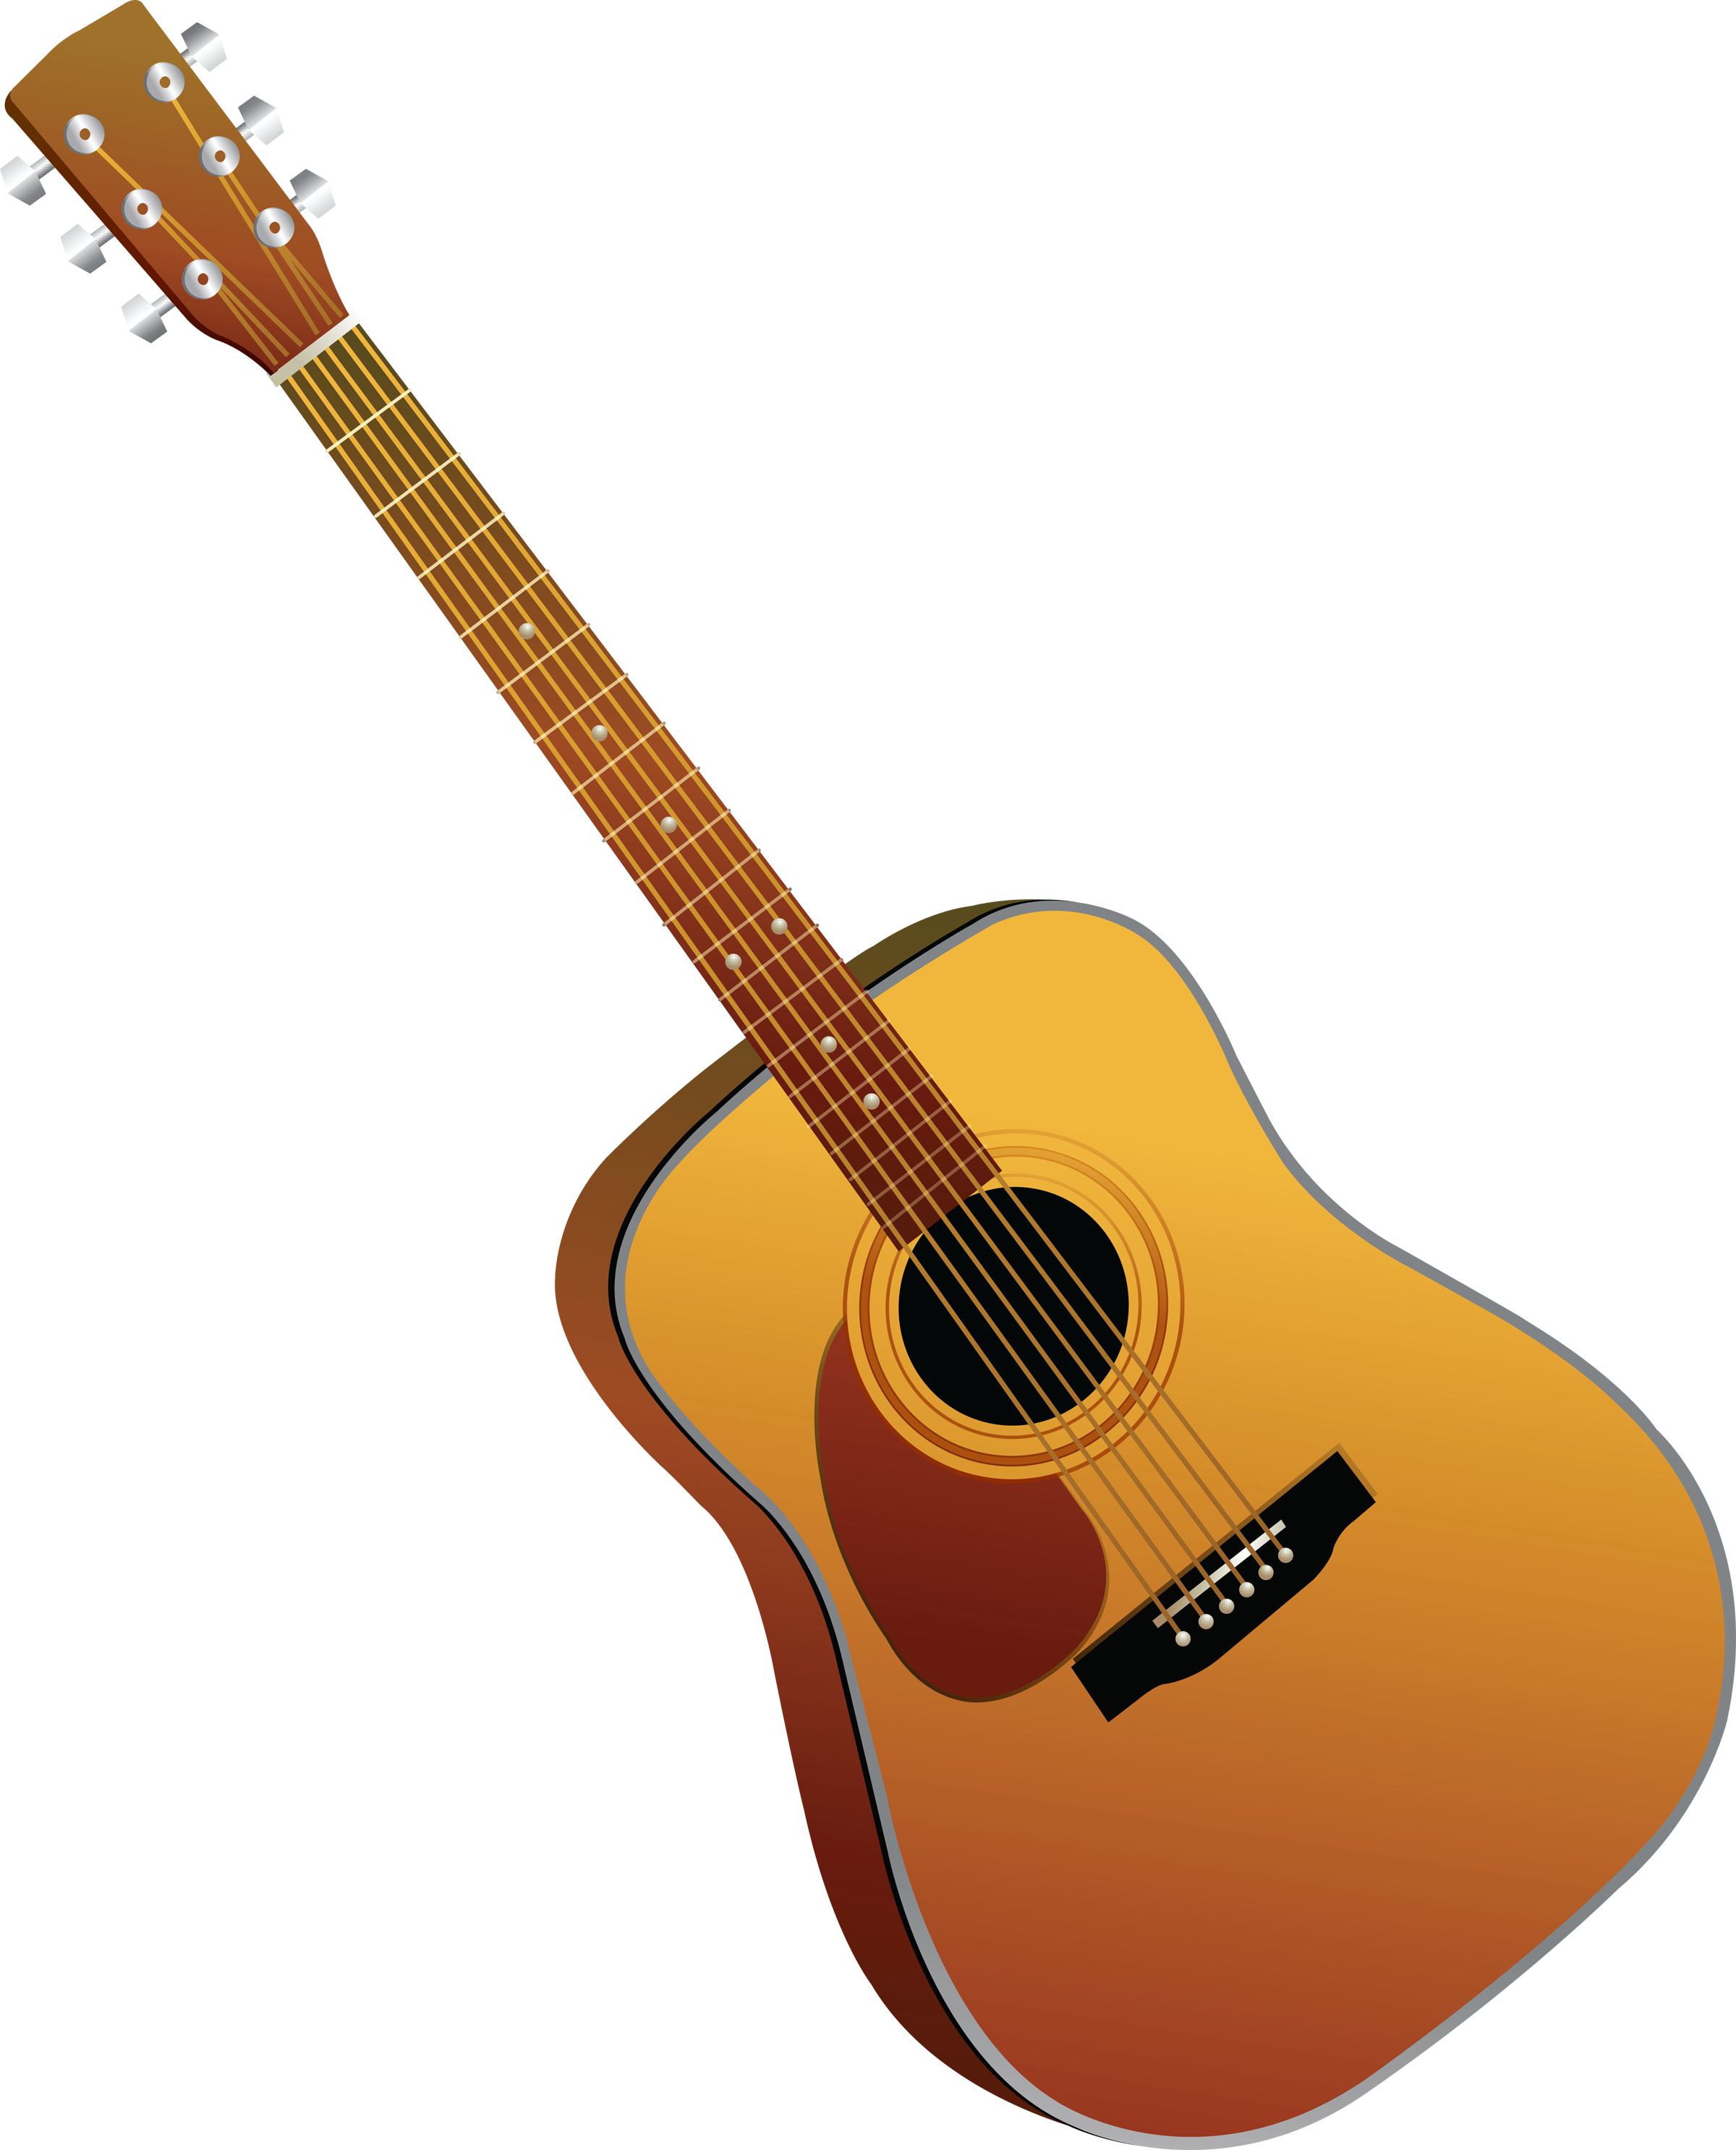 Vektor gitar akustik PNG emas